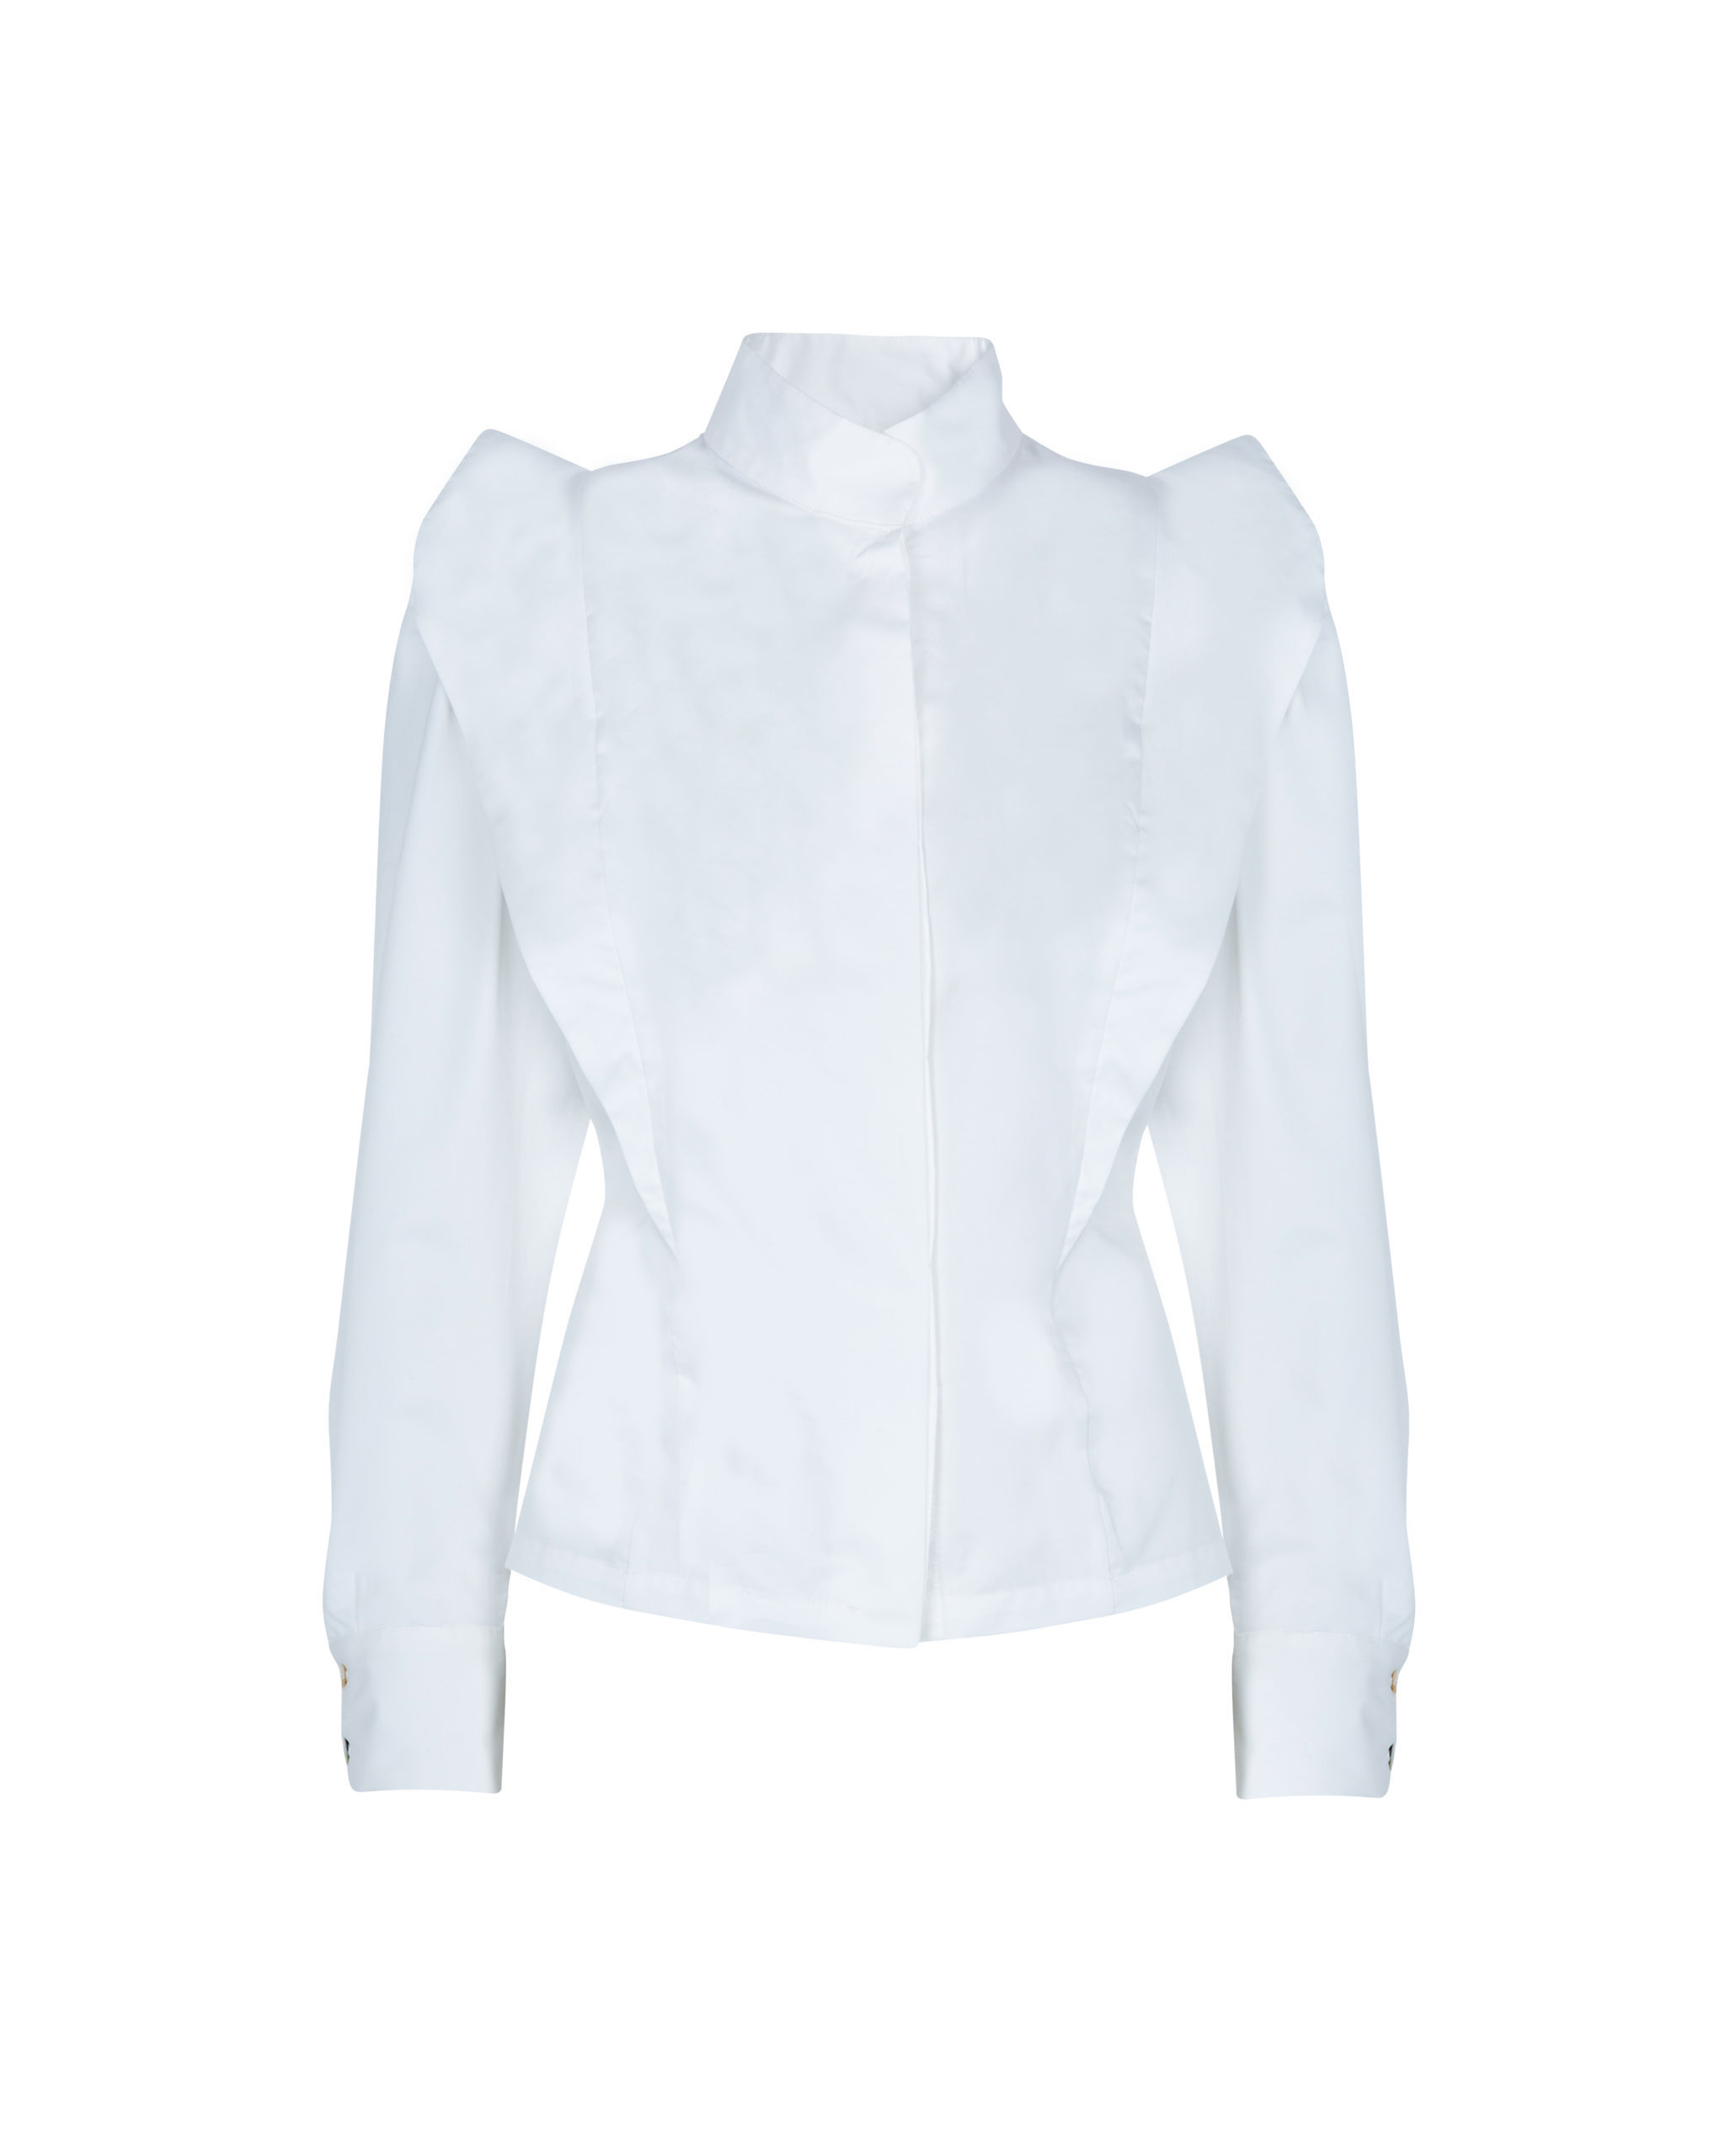 Camisa blanca de cuello mao, The IQ Collection (95 euros).